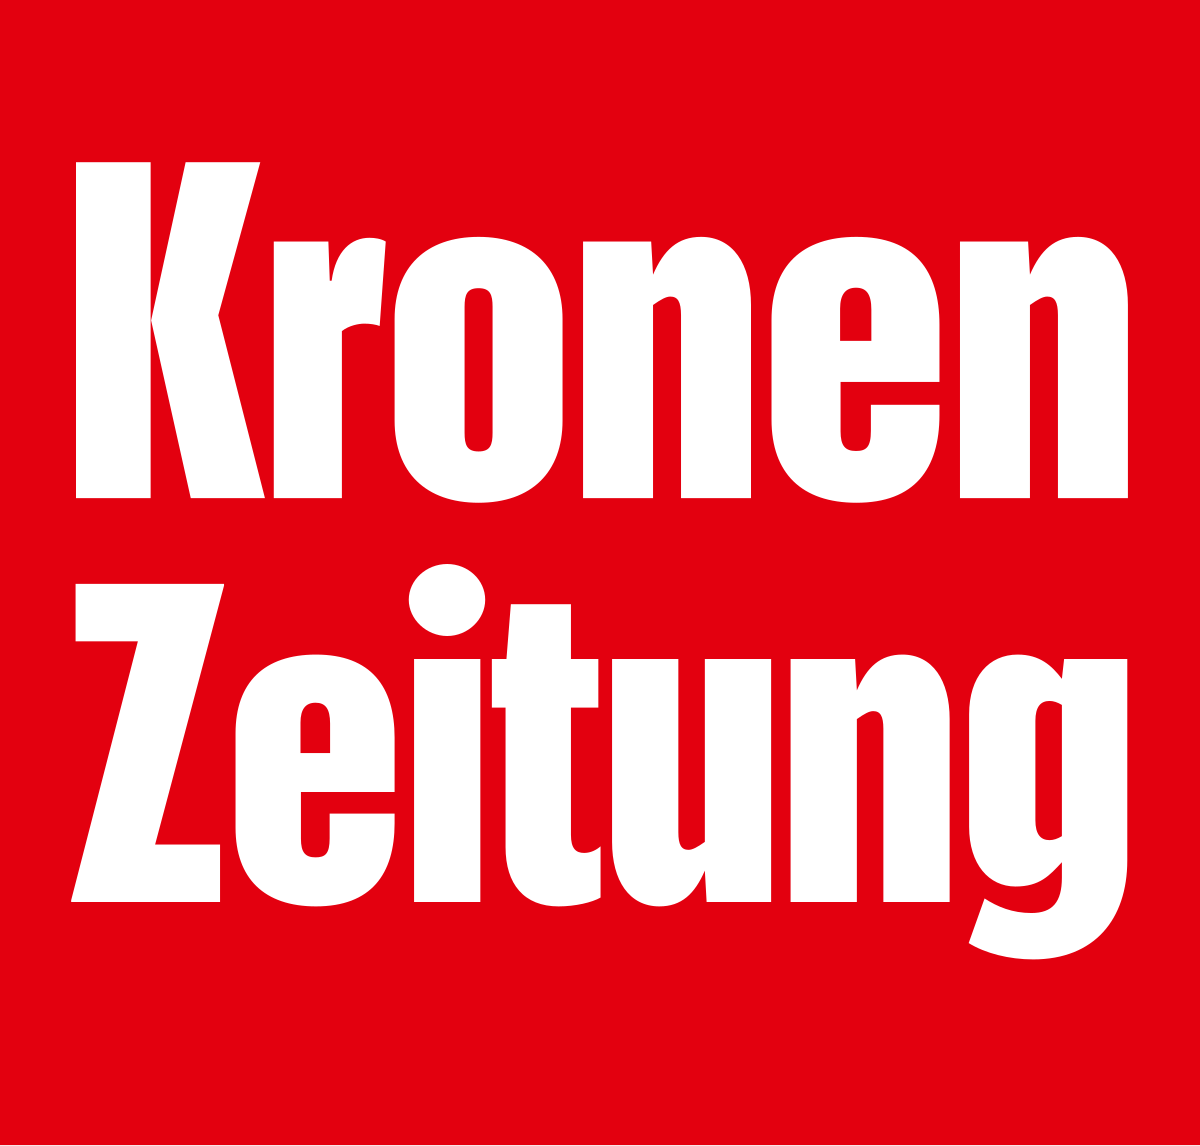 KronenZeitung Logo